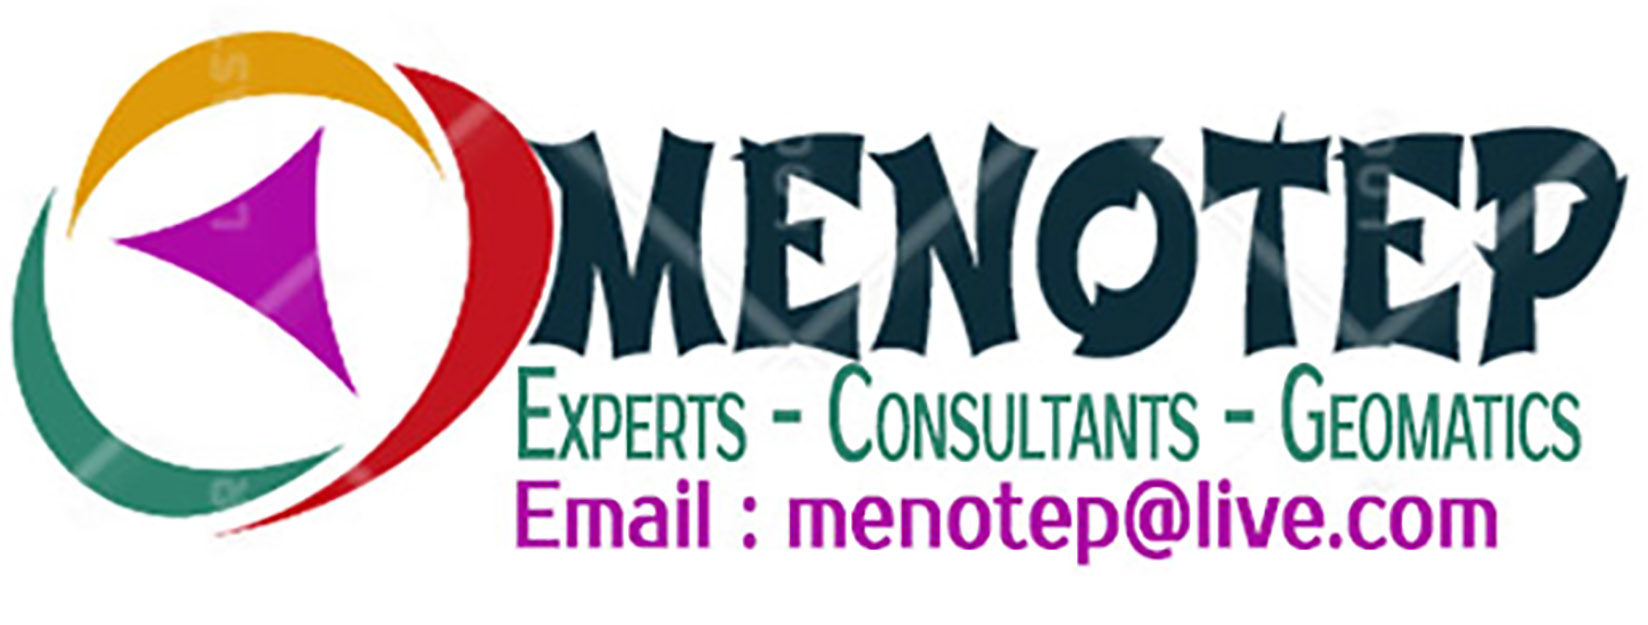 MENOTEP Consultants Experts. Services de géomatique, cartographie et SIG